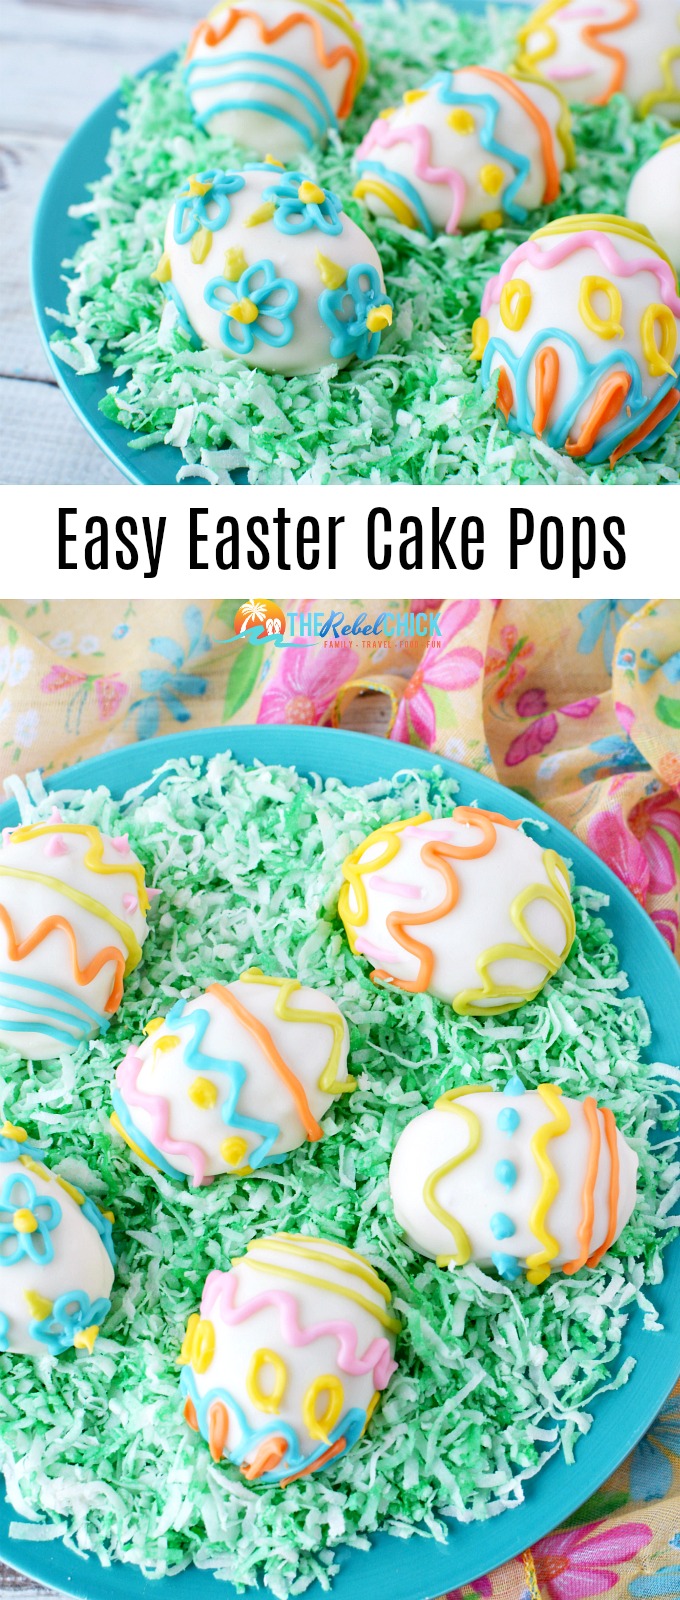 Easy Easter Cake Pops Recipe